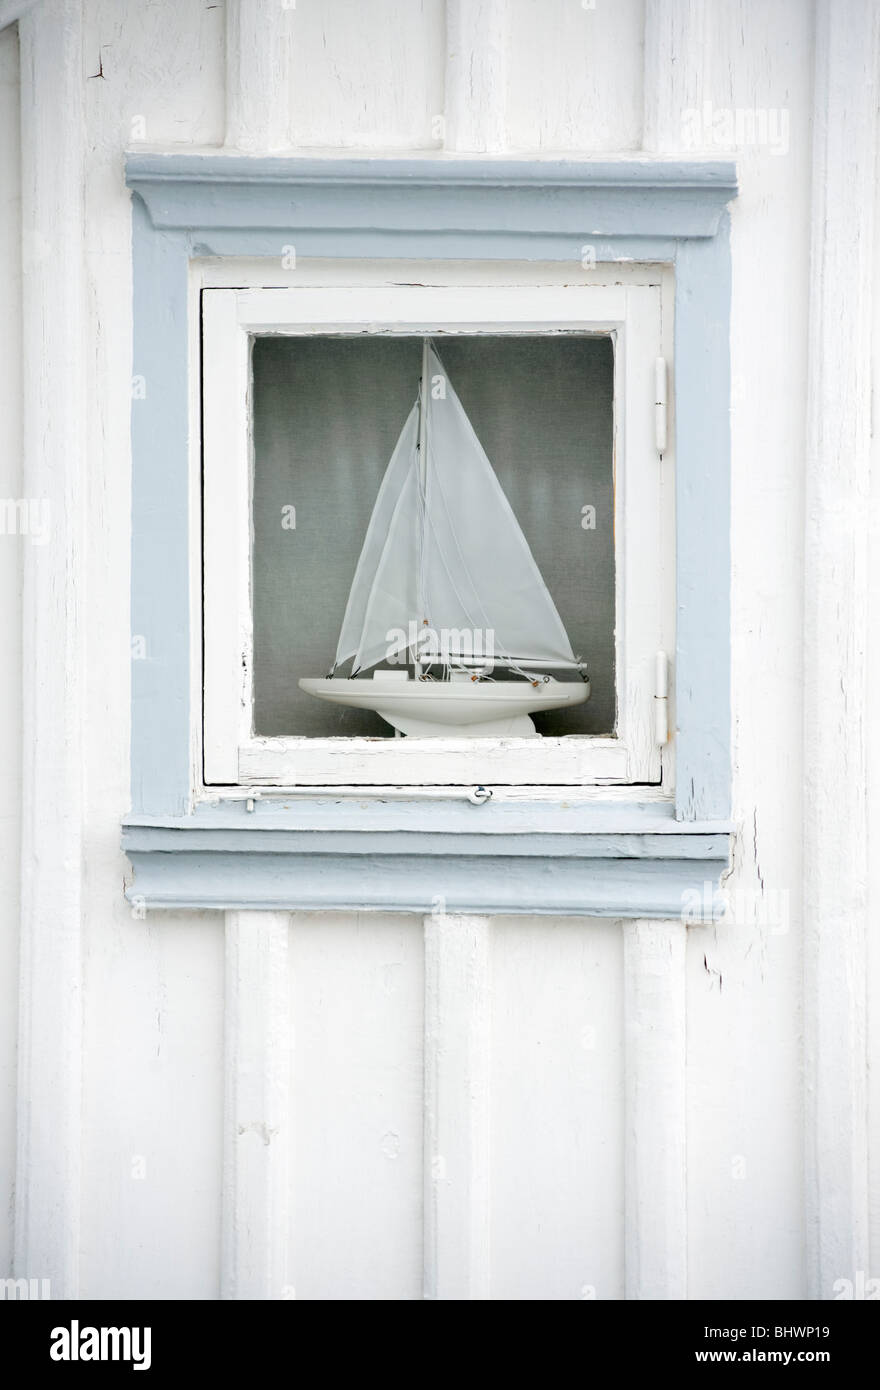 Détail de bateau à voile en fenêtre de maison en bois dans village de Fiskebackskil sur Bohuslan coast dans Vastra Sweden Suède Banque D'Images